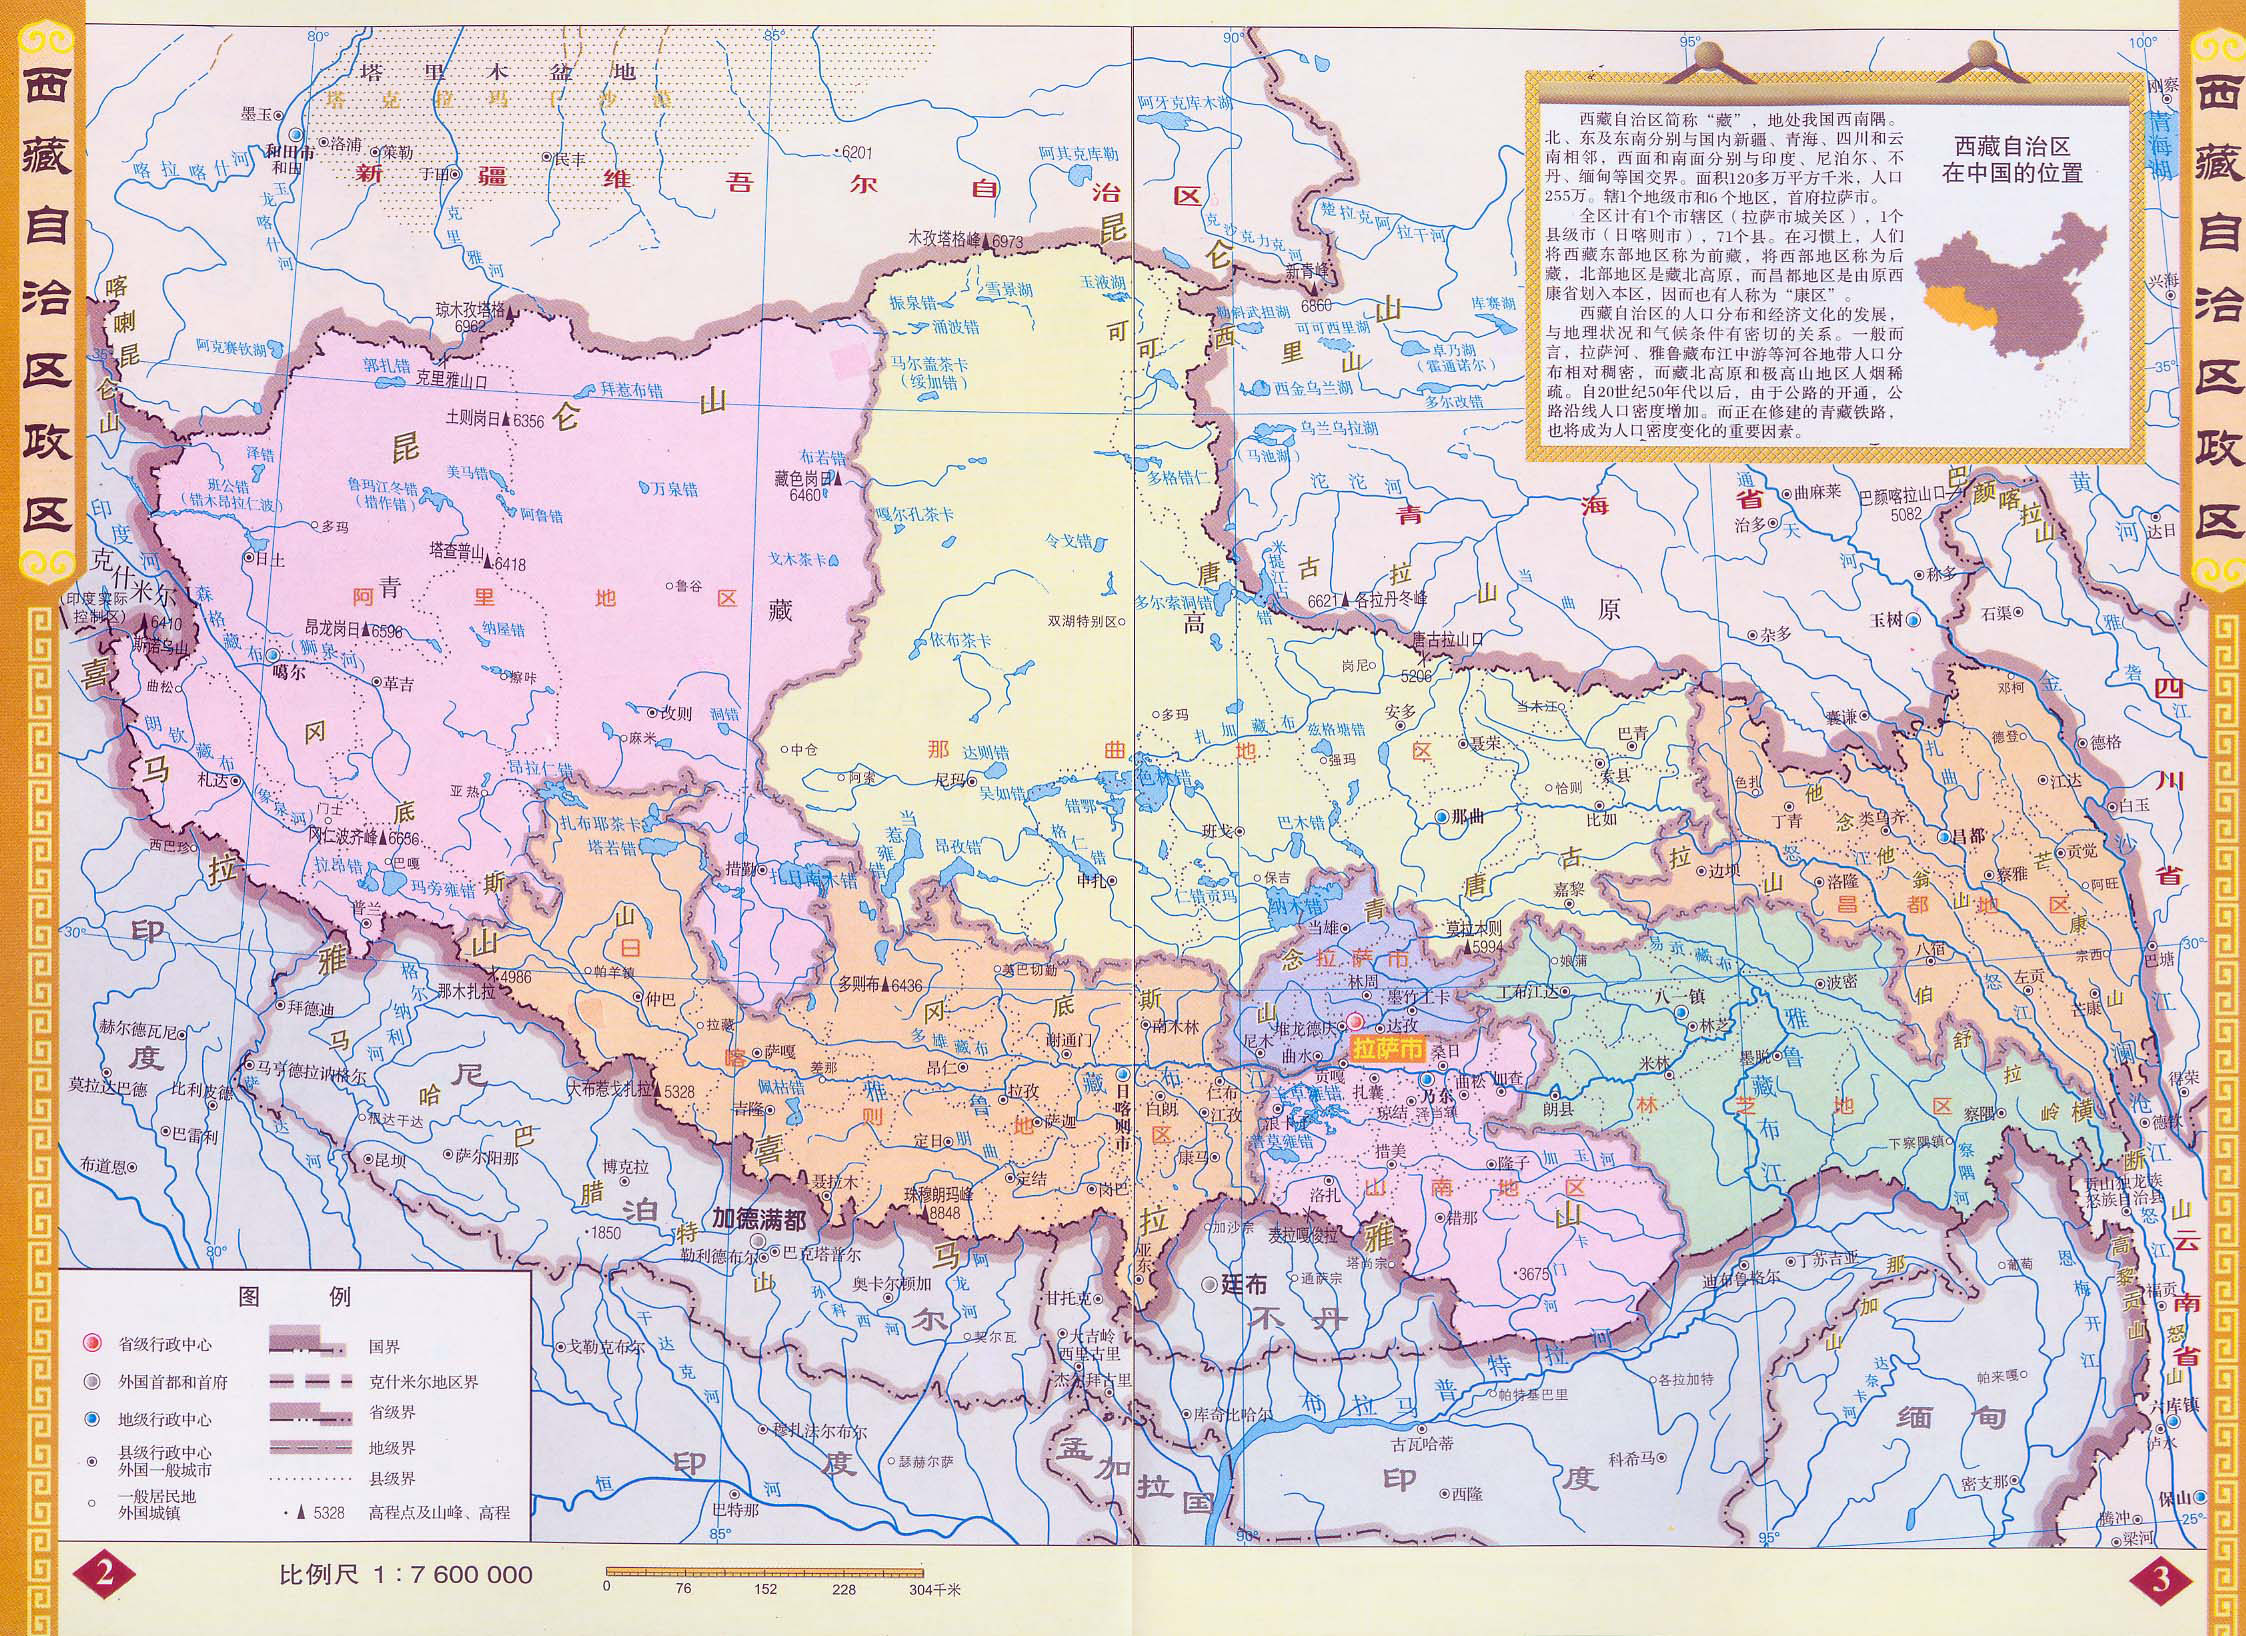 中国地图 西藏 >> 西藏地图全图高清版  分类: 西藏  更新:2015-5-27图片